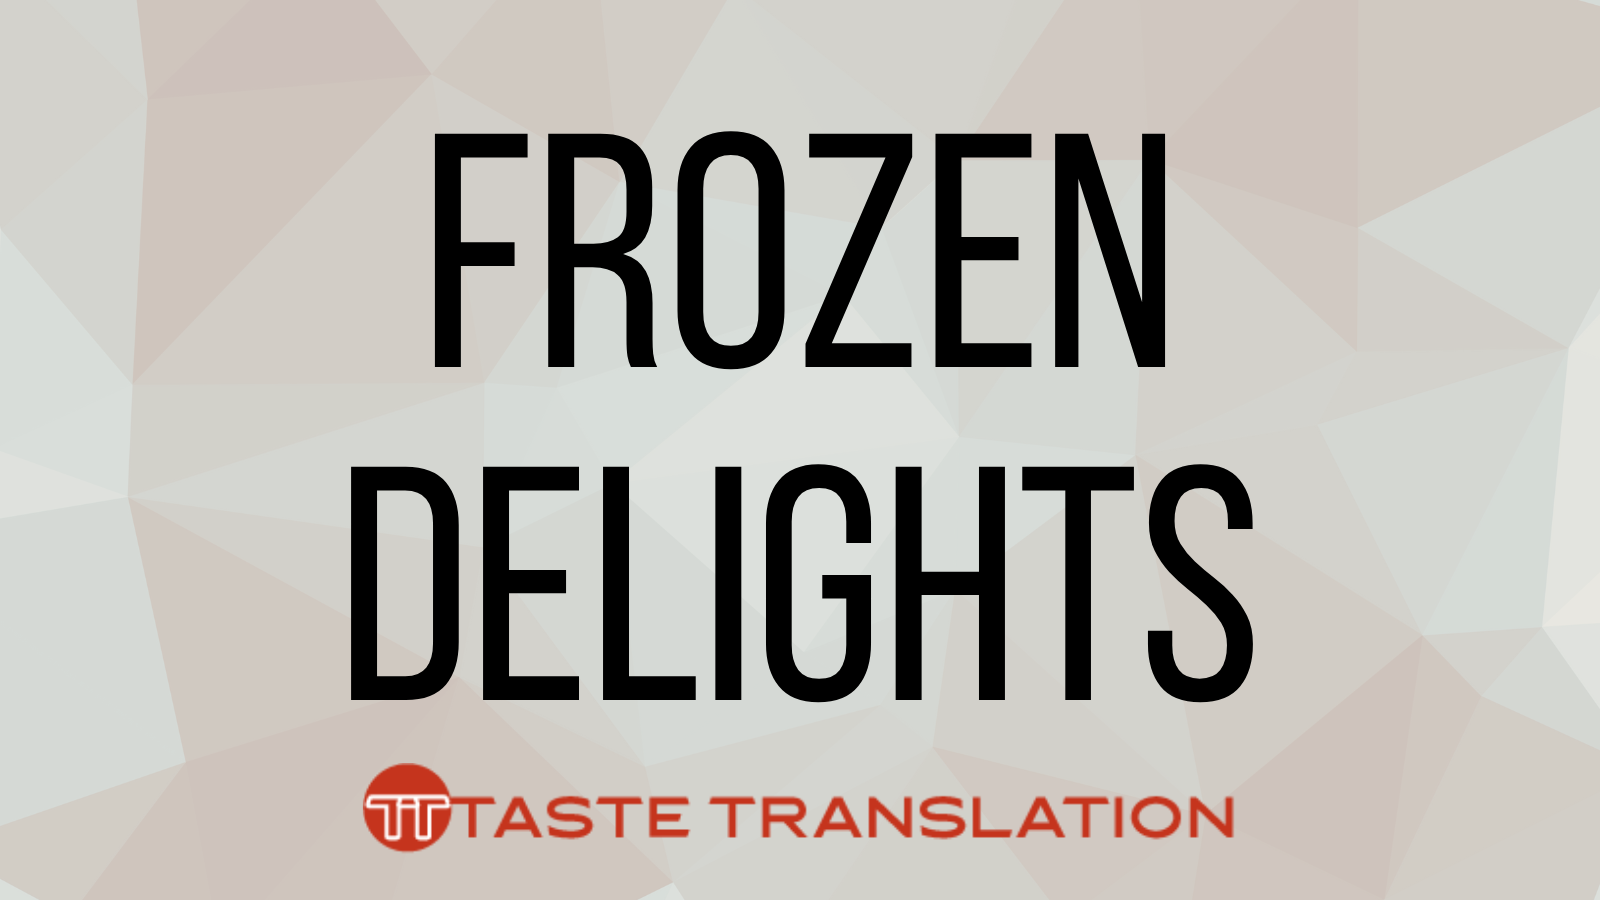 Frozen delights